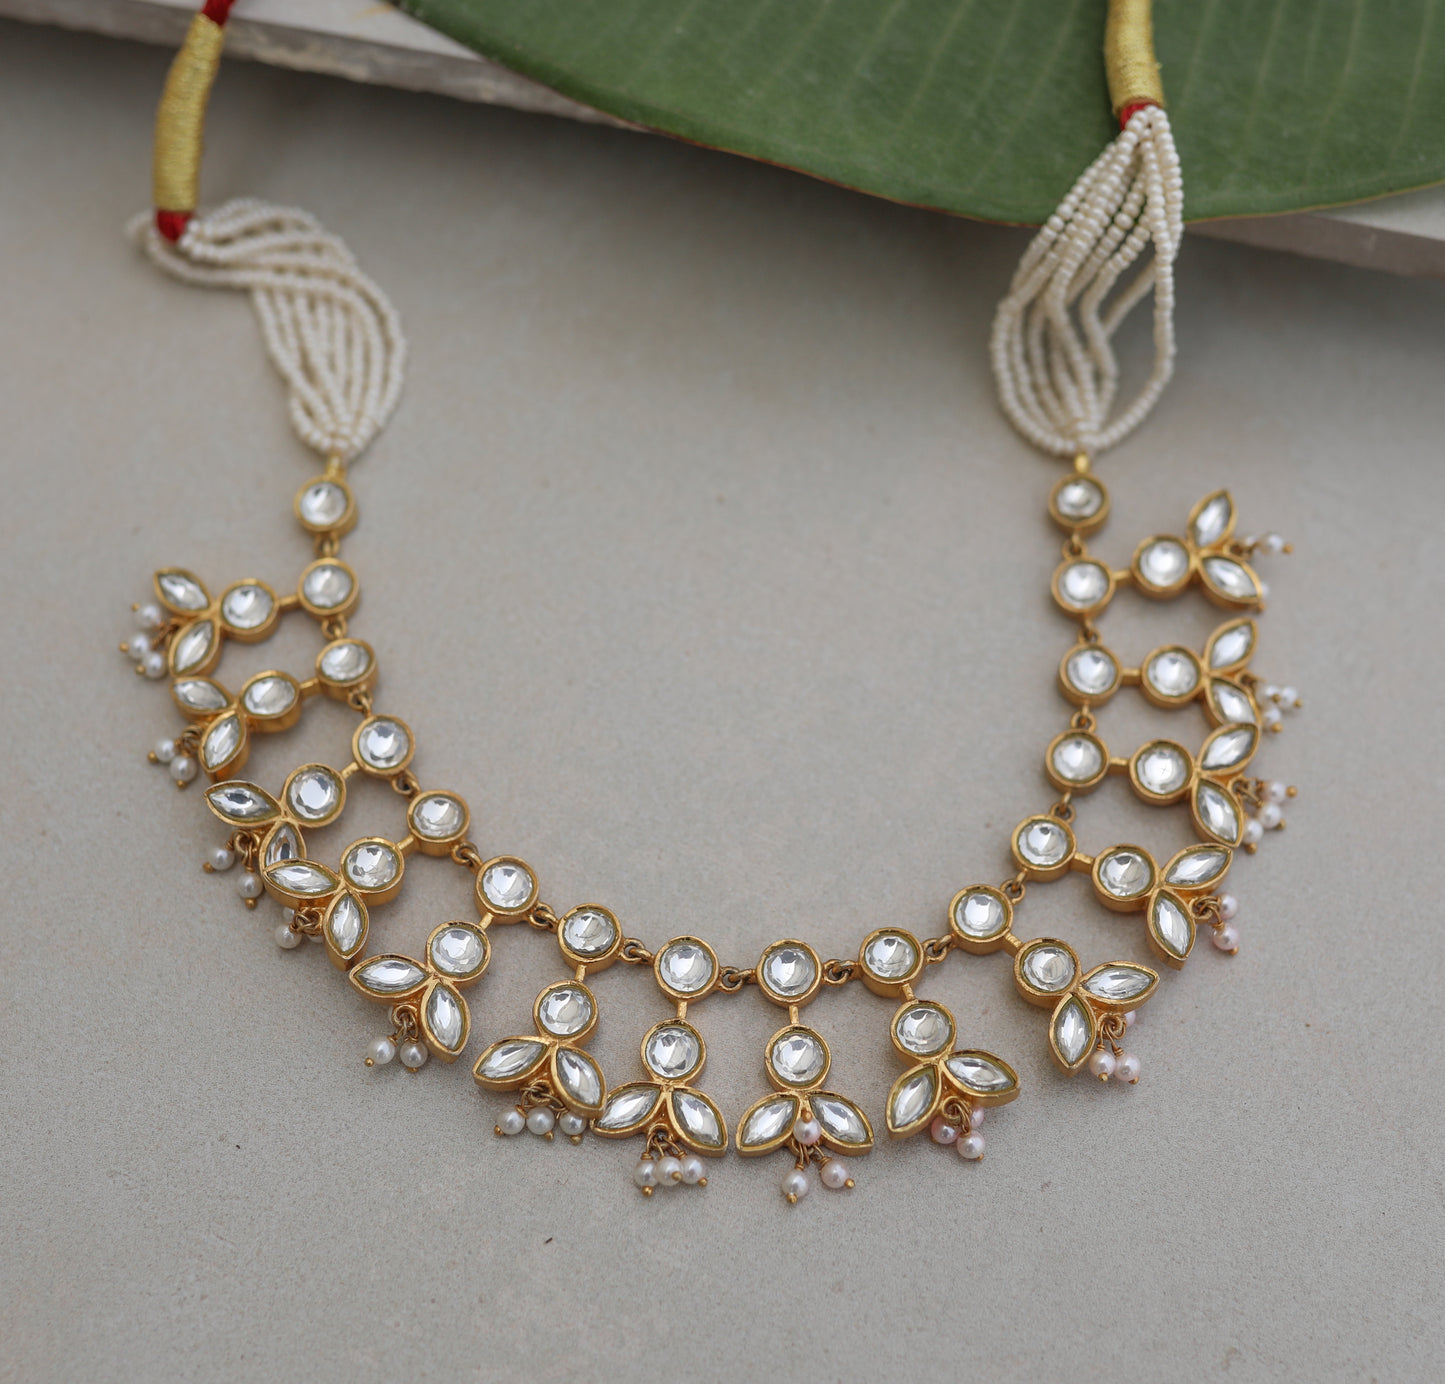 Festive Jadau necklace